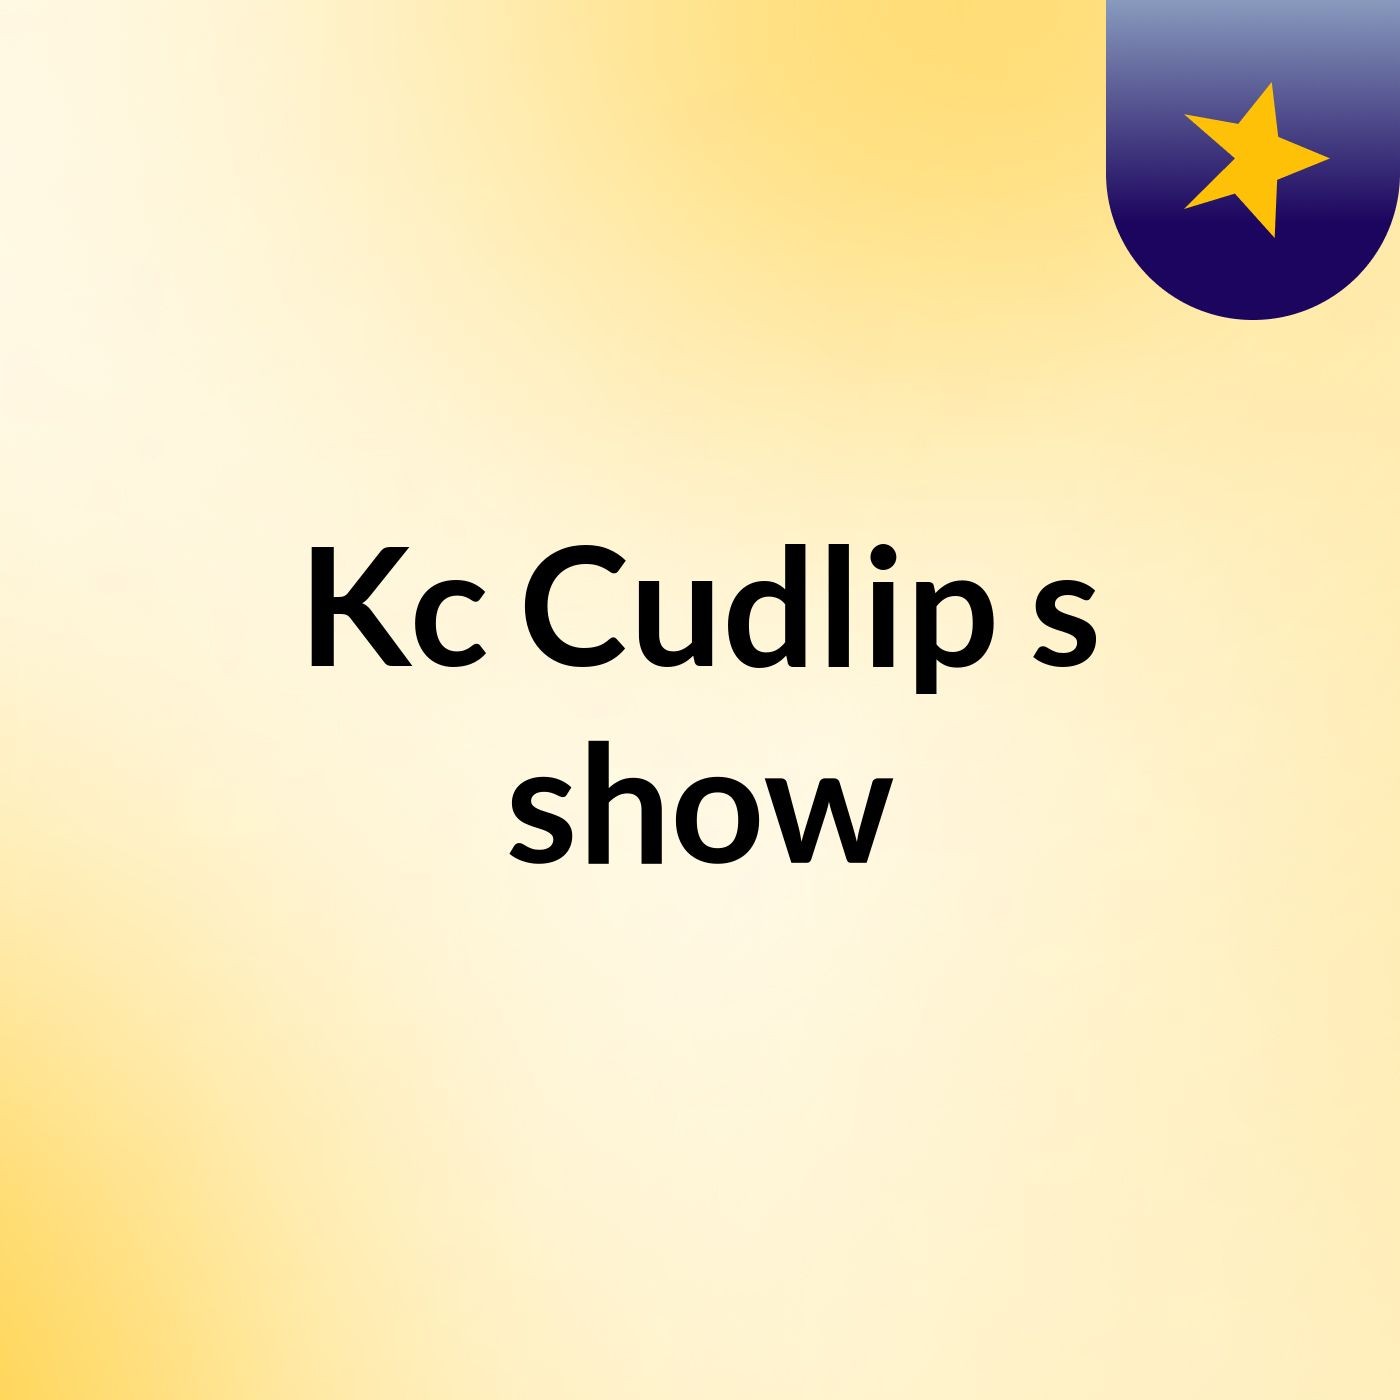 Kc Cudlip's show